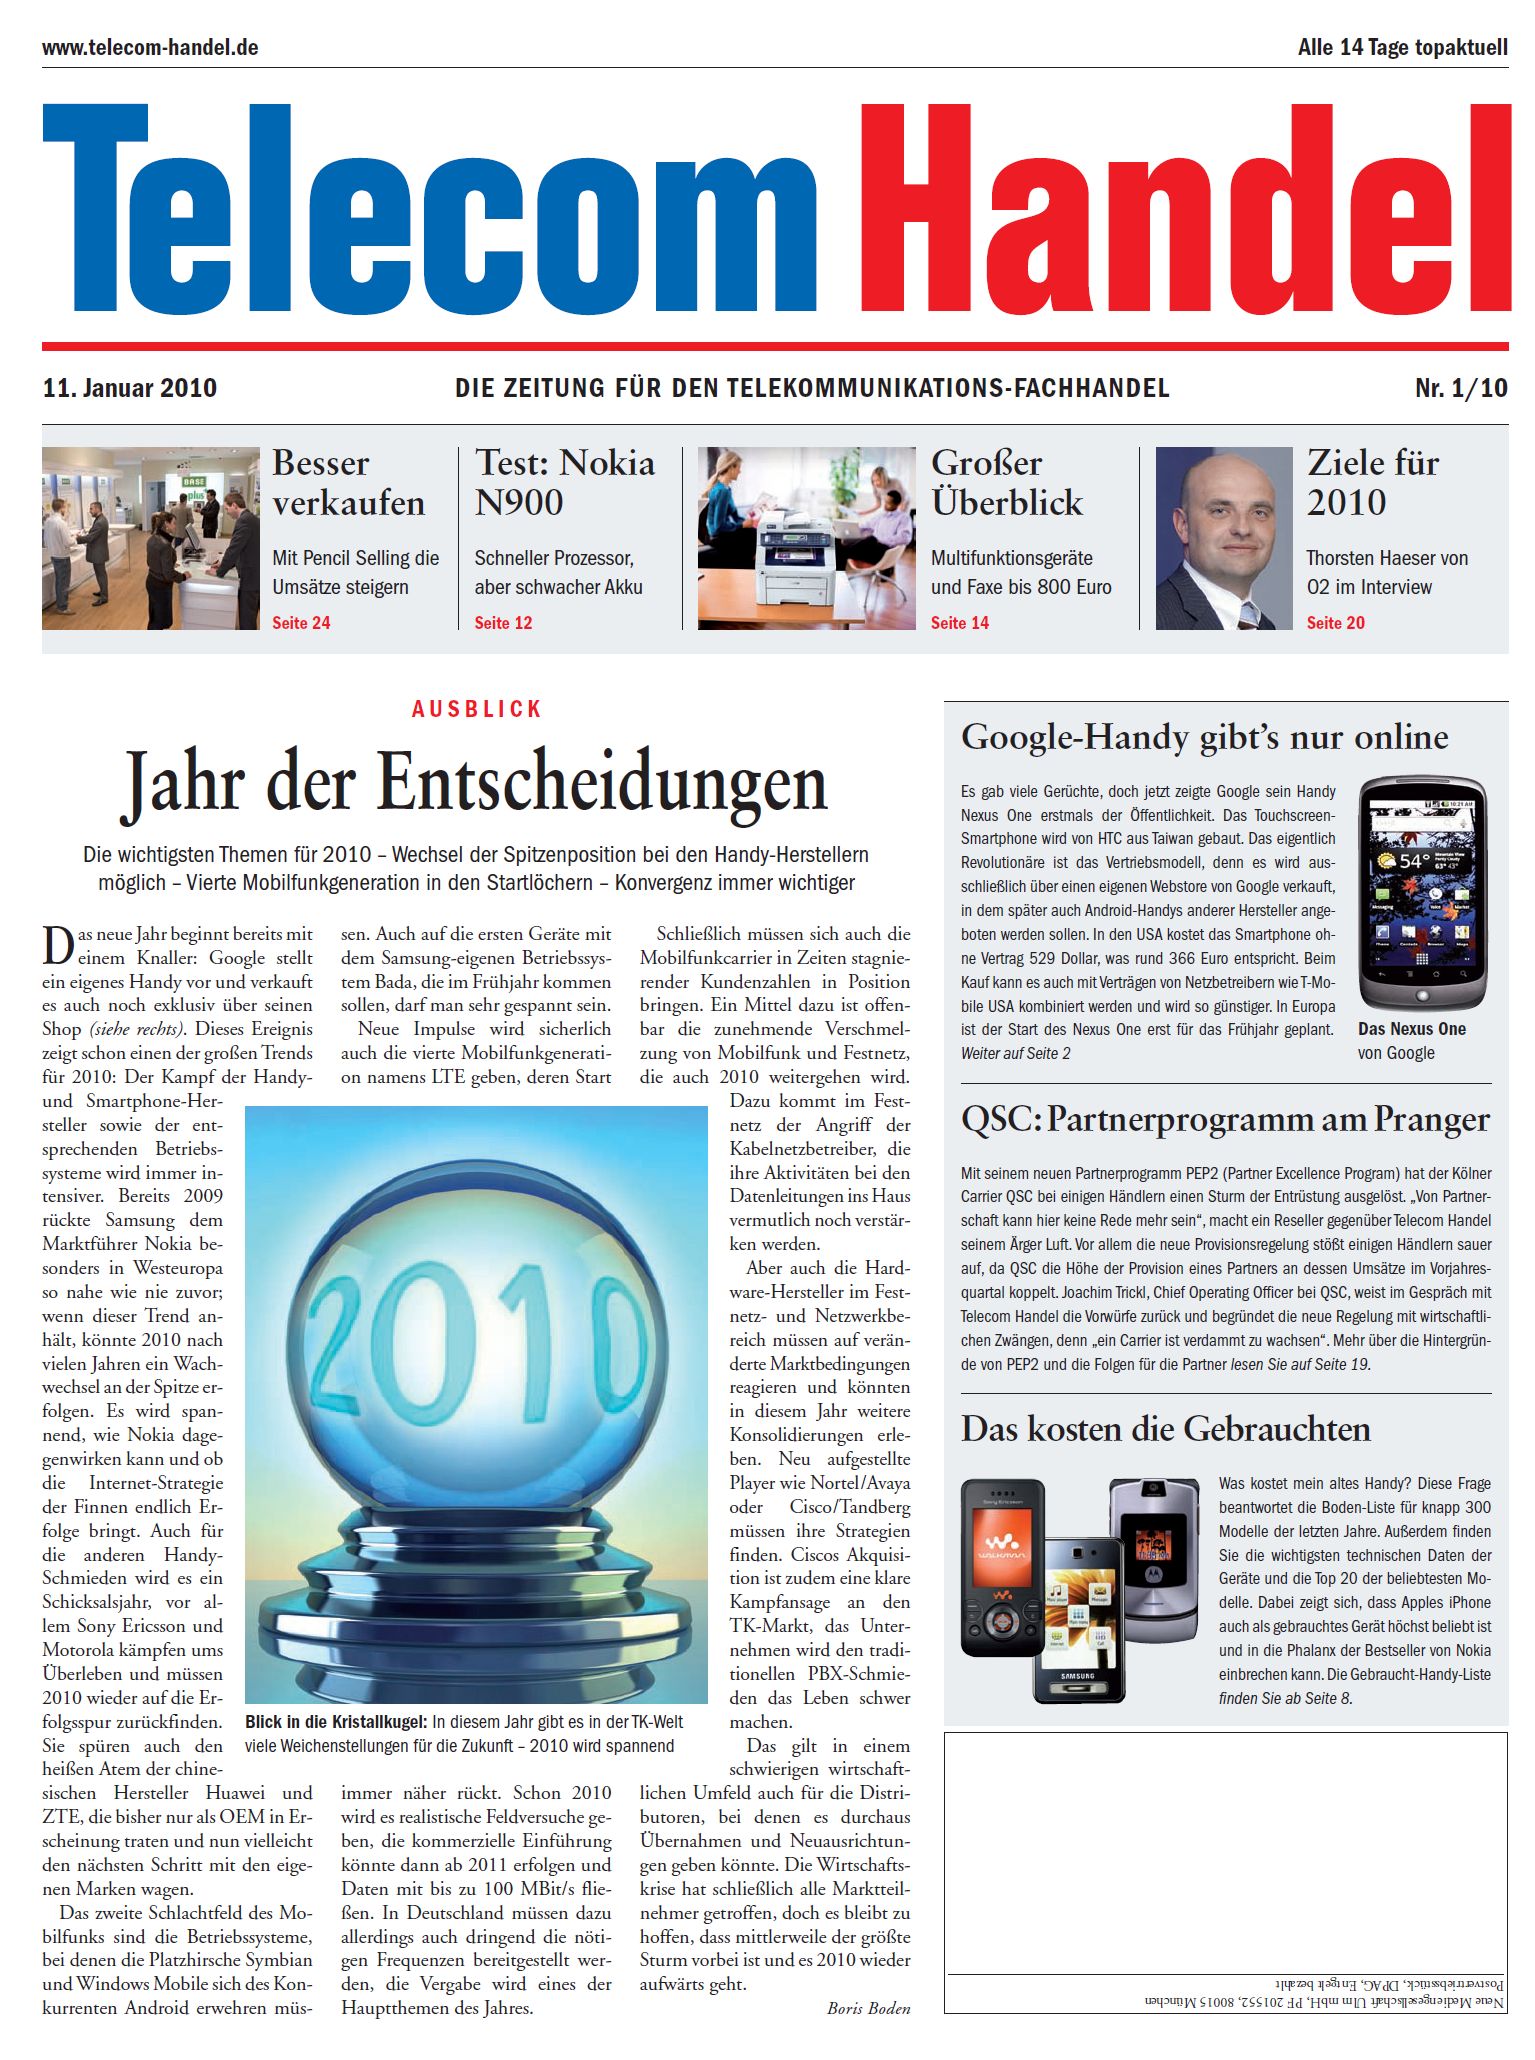 Telecom Handel Ausgabe 01/2010